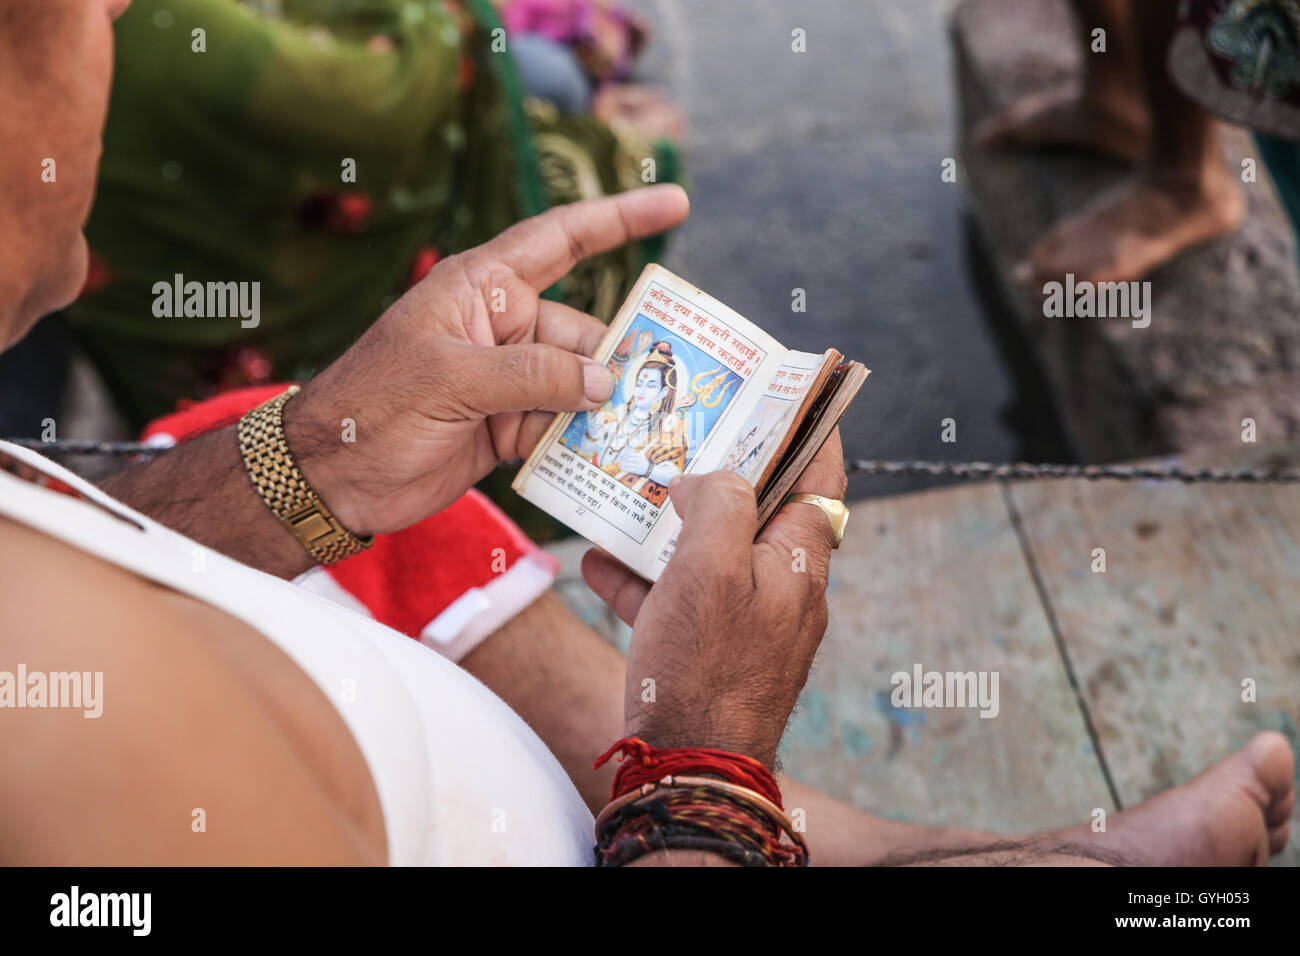 Die Pujas (Gebete) in Indien während der Khumb Mela - 27.04.2016 - Indien / Madhya Pradesh / Ujjain - während die Khumb Mela, Millionen von Pilgern die große Pujas jede Nacht an den Ufern des Flusses Shipra besuchen. Die Puja ist ein hindu-Ritual und Anbetung. Die Zeremonie beginnt mit einer Glocke läuten, um die Gottheiten zu nennen und mit dem Angebot an frischen Blumen, Weihrauch, Gewürze und Bonbons mit Musik und Mantras folgt. Die Puja hat eine vorherrschende Rolle während der Khumb Mela kombiniert mit der Heiligen Bäder im Fluss, die zu diesem Zeitpunkt berechnet werden, mit heilende Kräfte durch die m Stockfoto